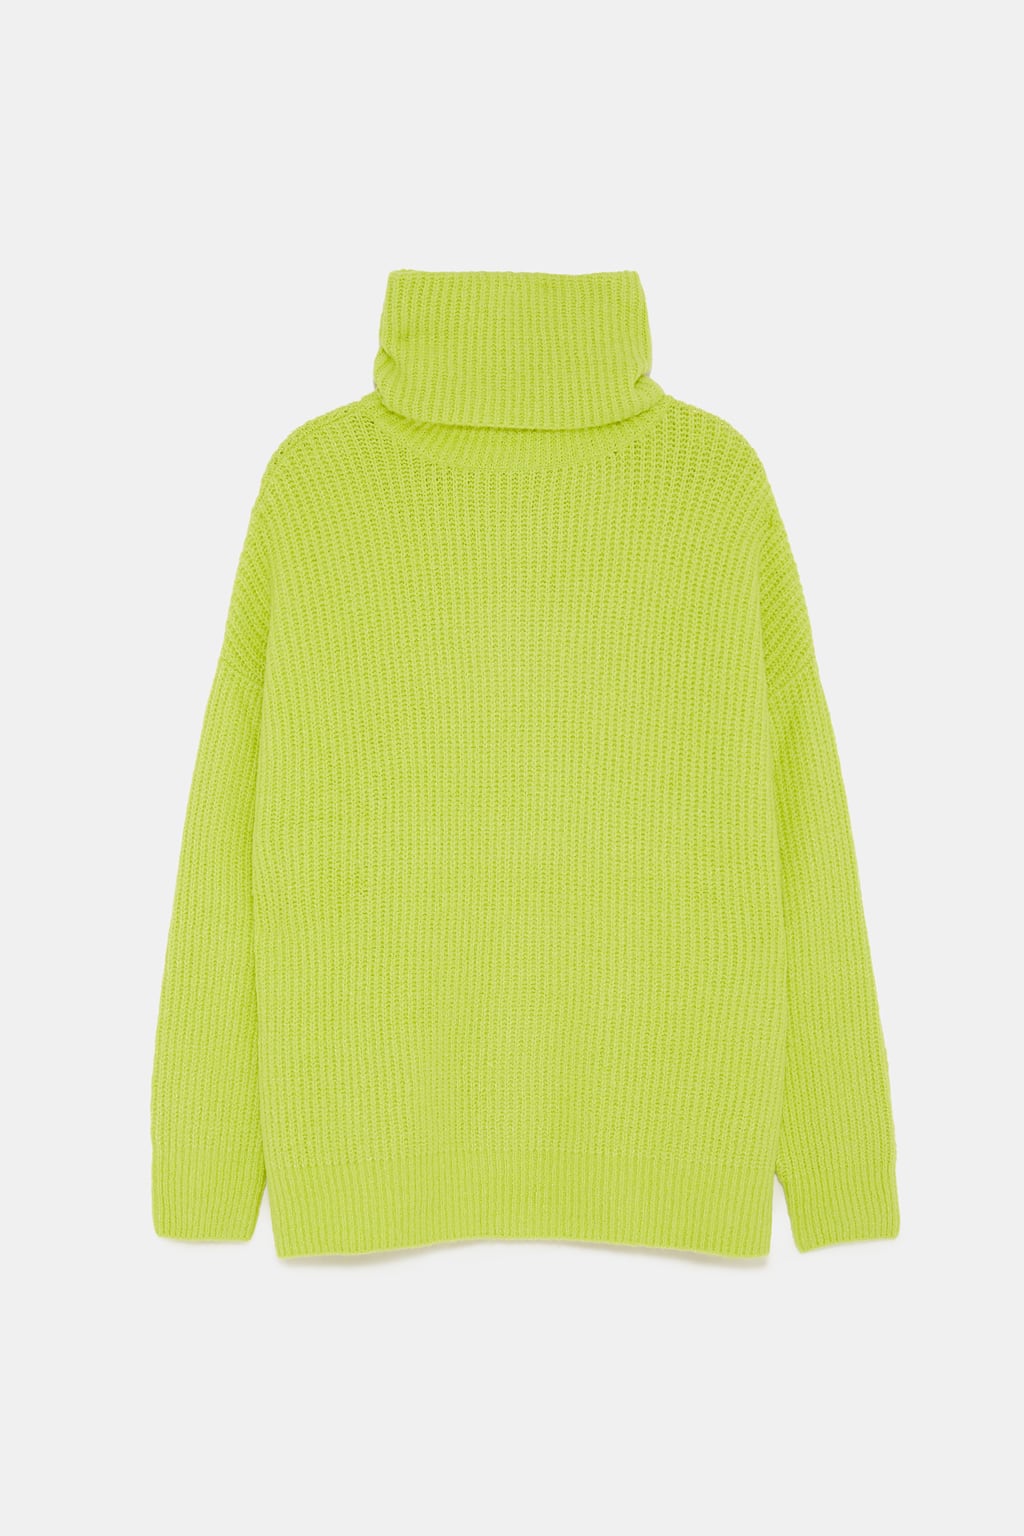 zara neon sweater